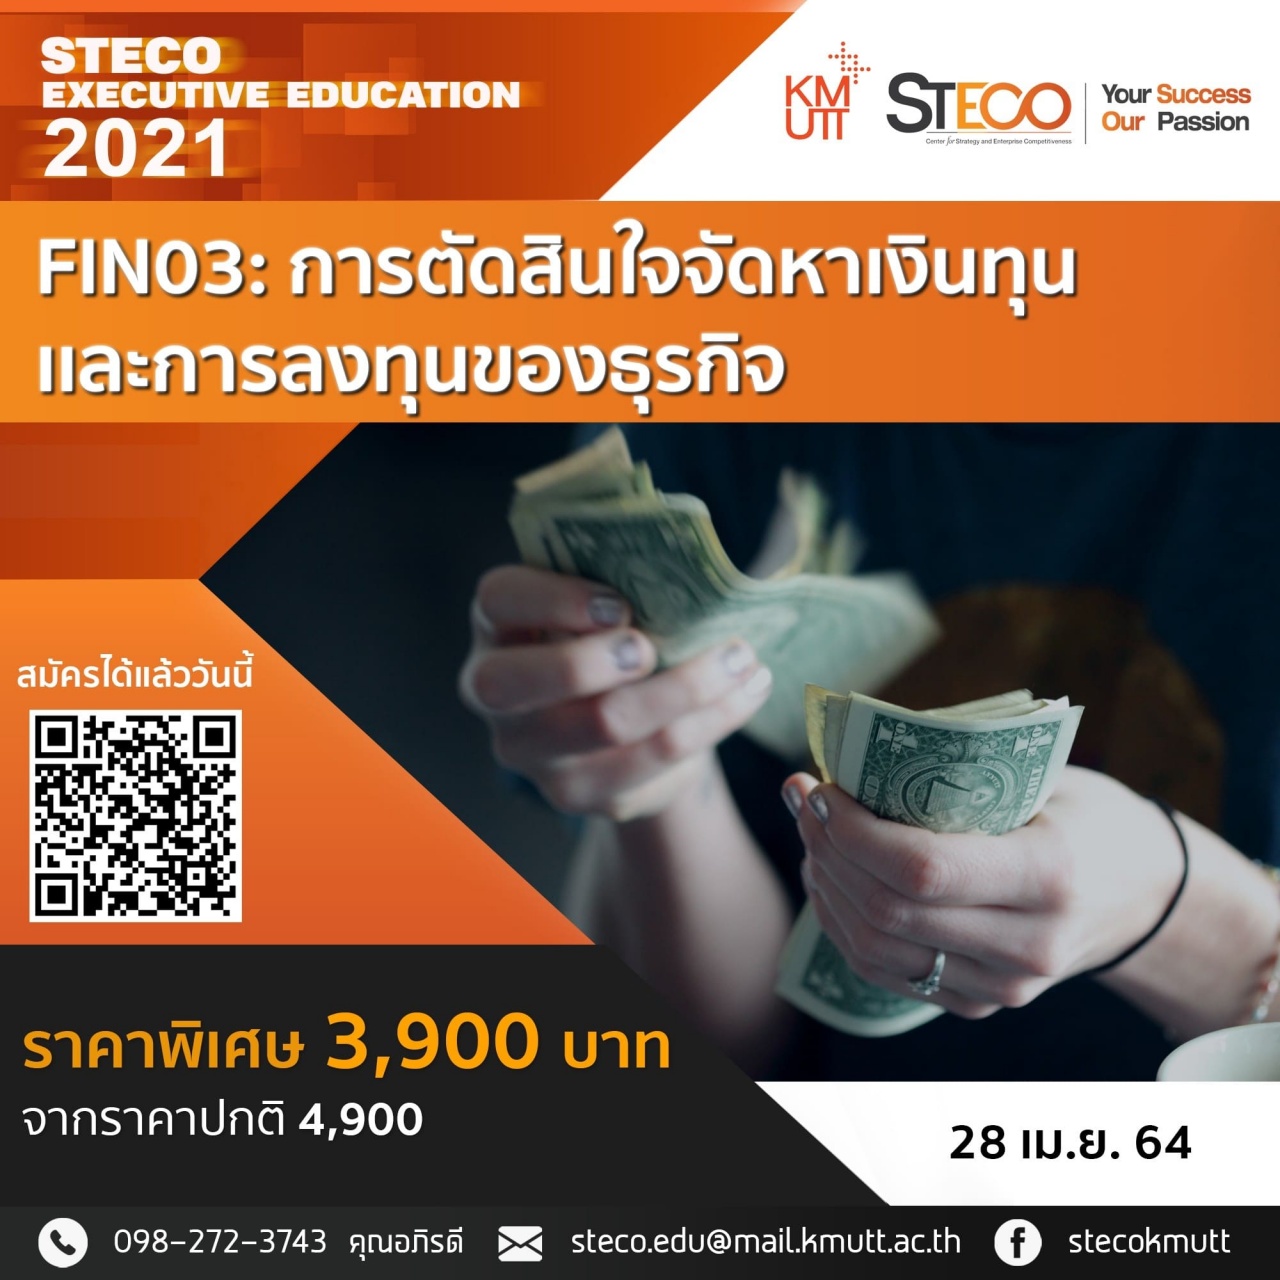 FIN03: Financial and Investment Decisions (การตัดสินใจจัดหาเงินทุนและการลงทุนของธุรกิจ)